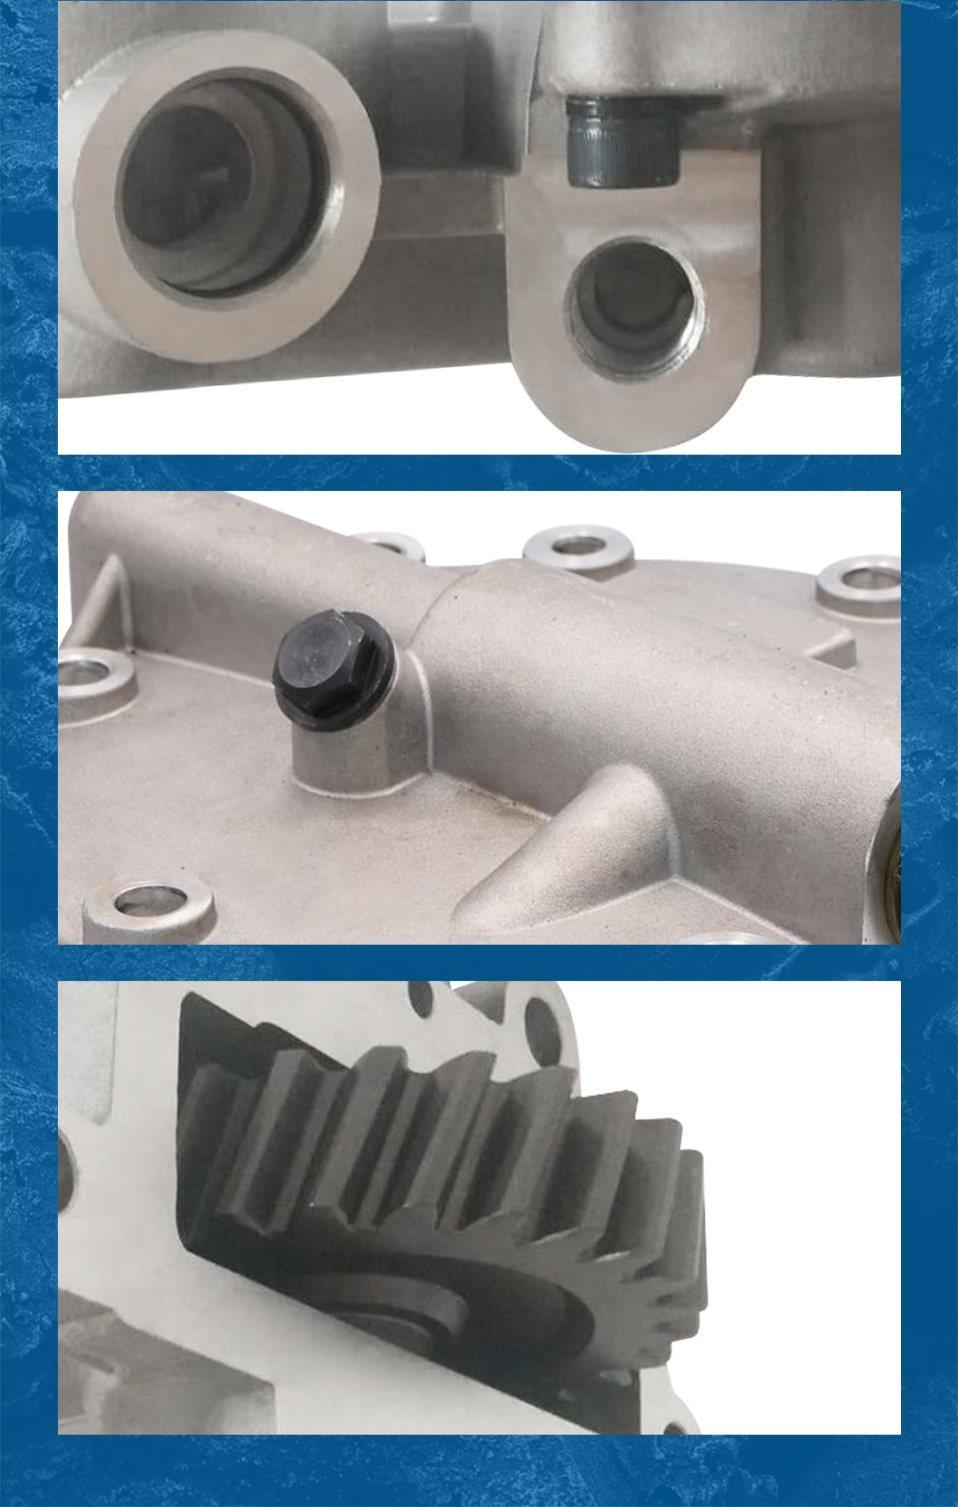 Supplier of Hydraulic Gear Pump 83936585